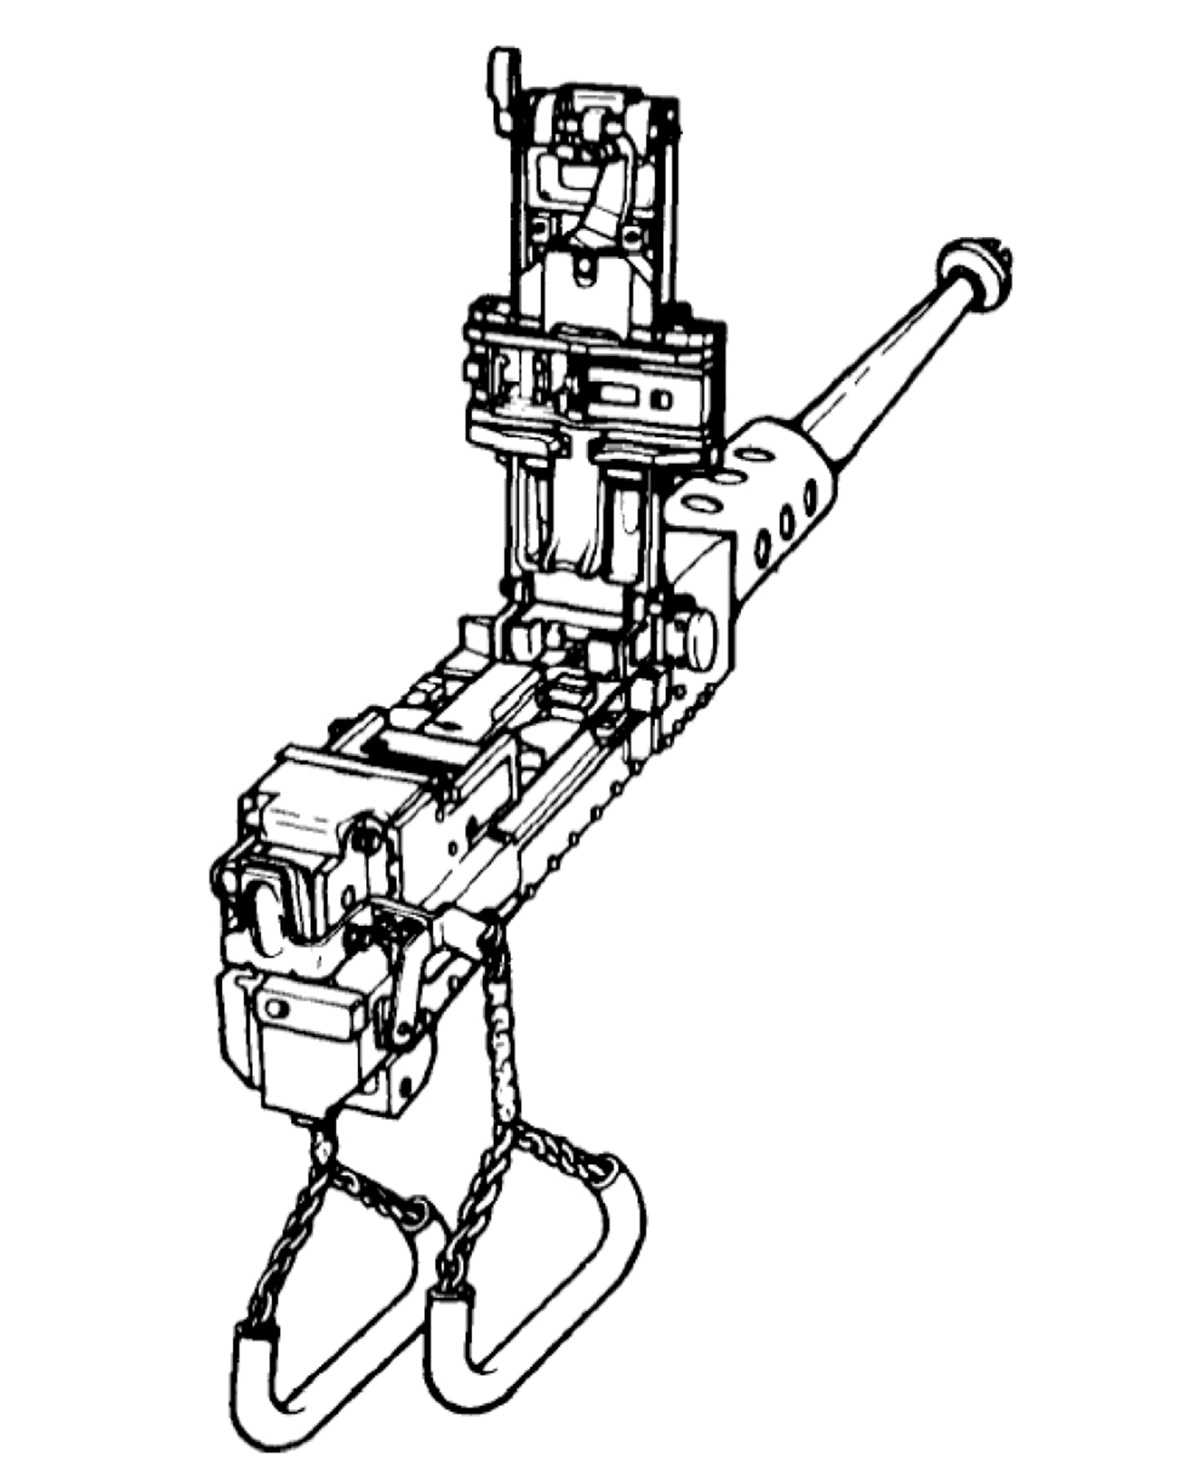 The M85 .50-caliber machine gun mounted on US tanks in World War II.